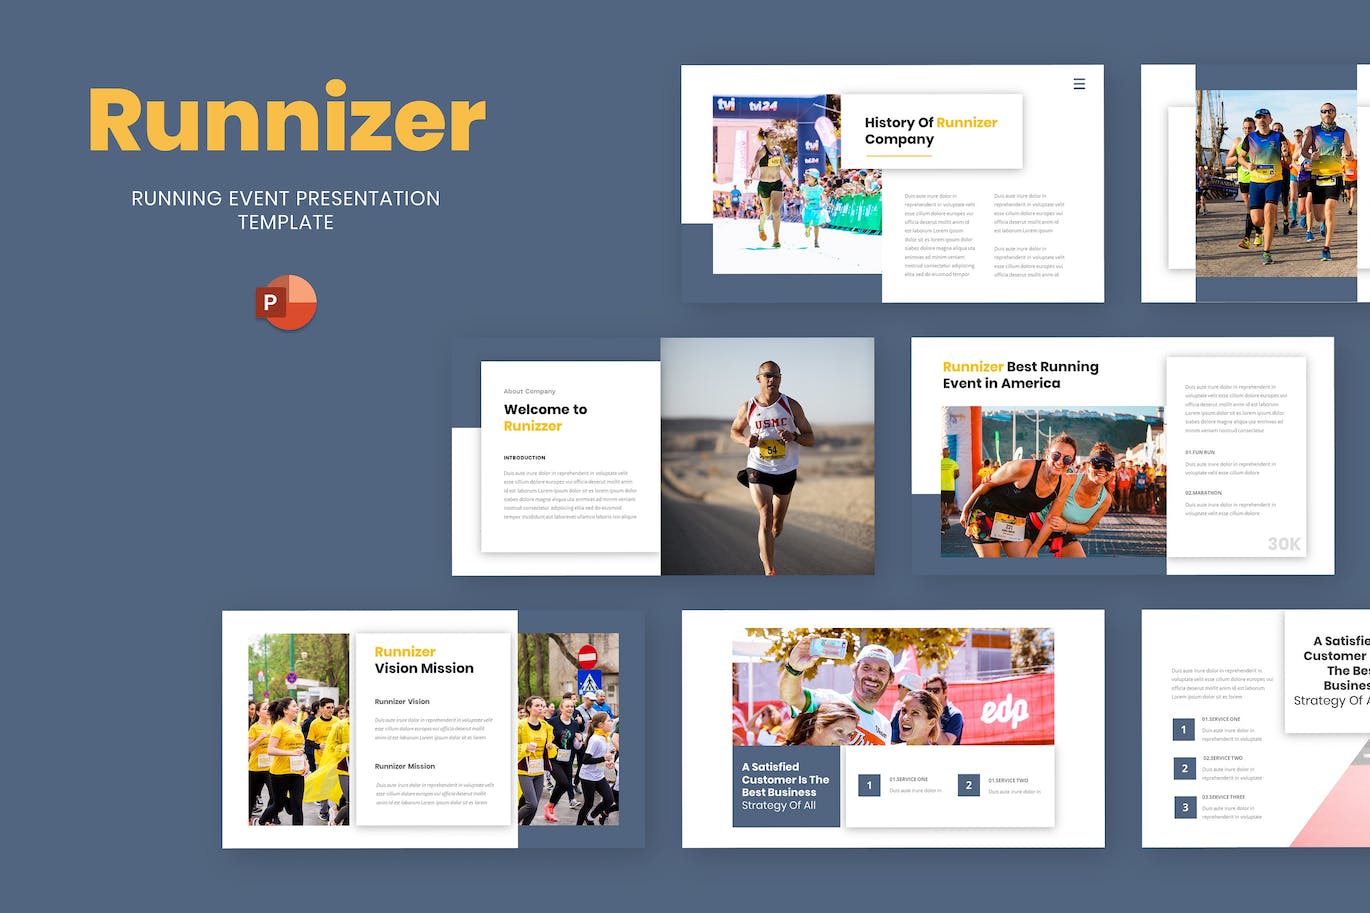 跑步活动PowerPoint演示文稿模板 Runnizer – Running Event Powerpoint Template 幻灯图表 第1张